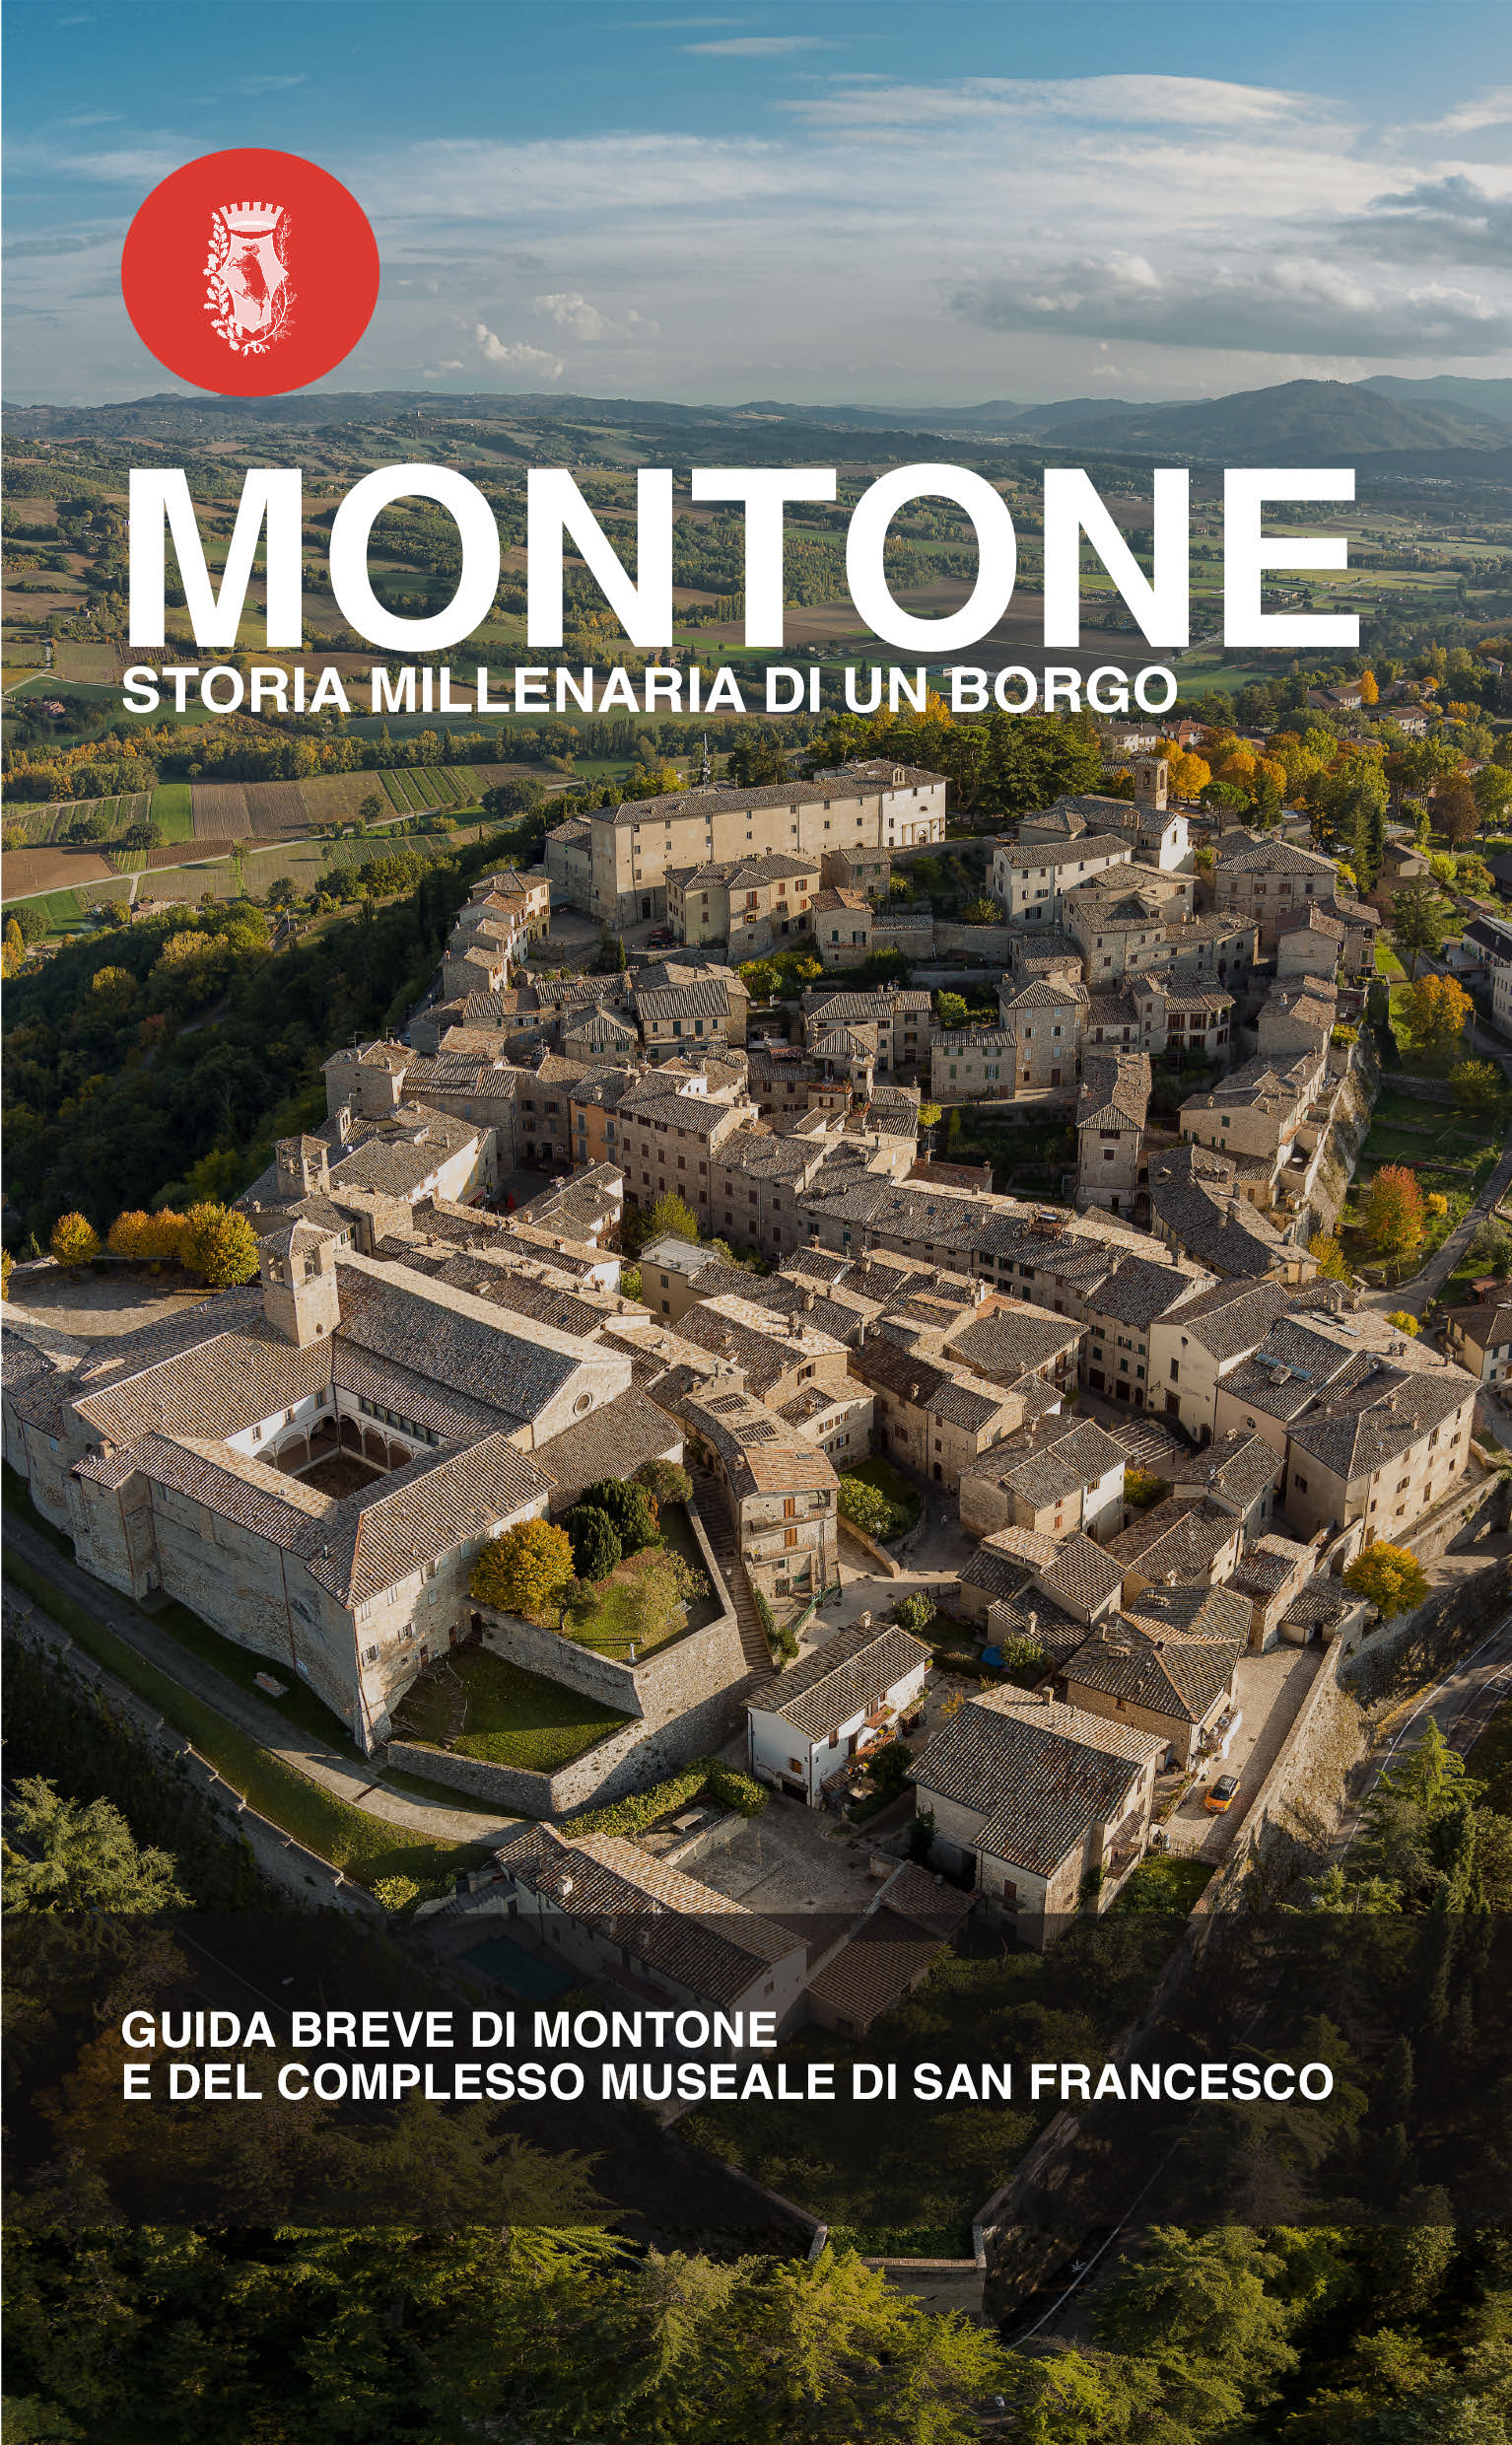 Montone – La storia millenaria del borgo in una guida turistica